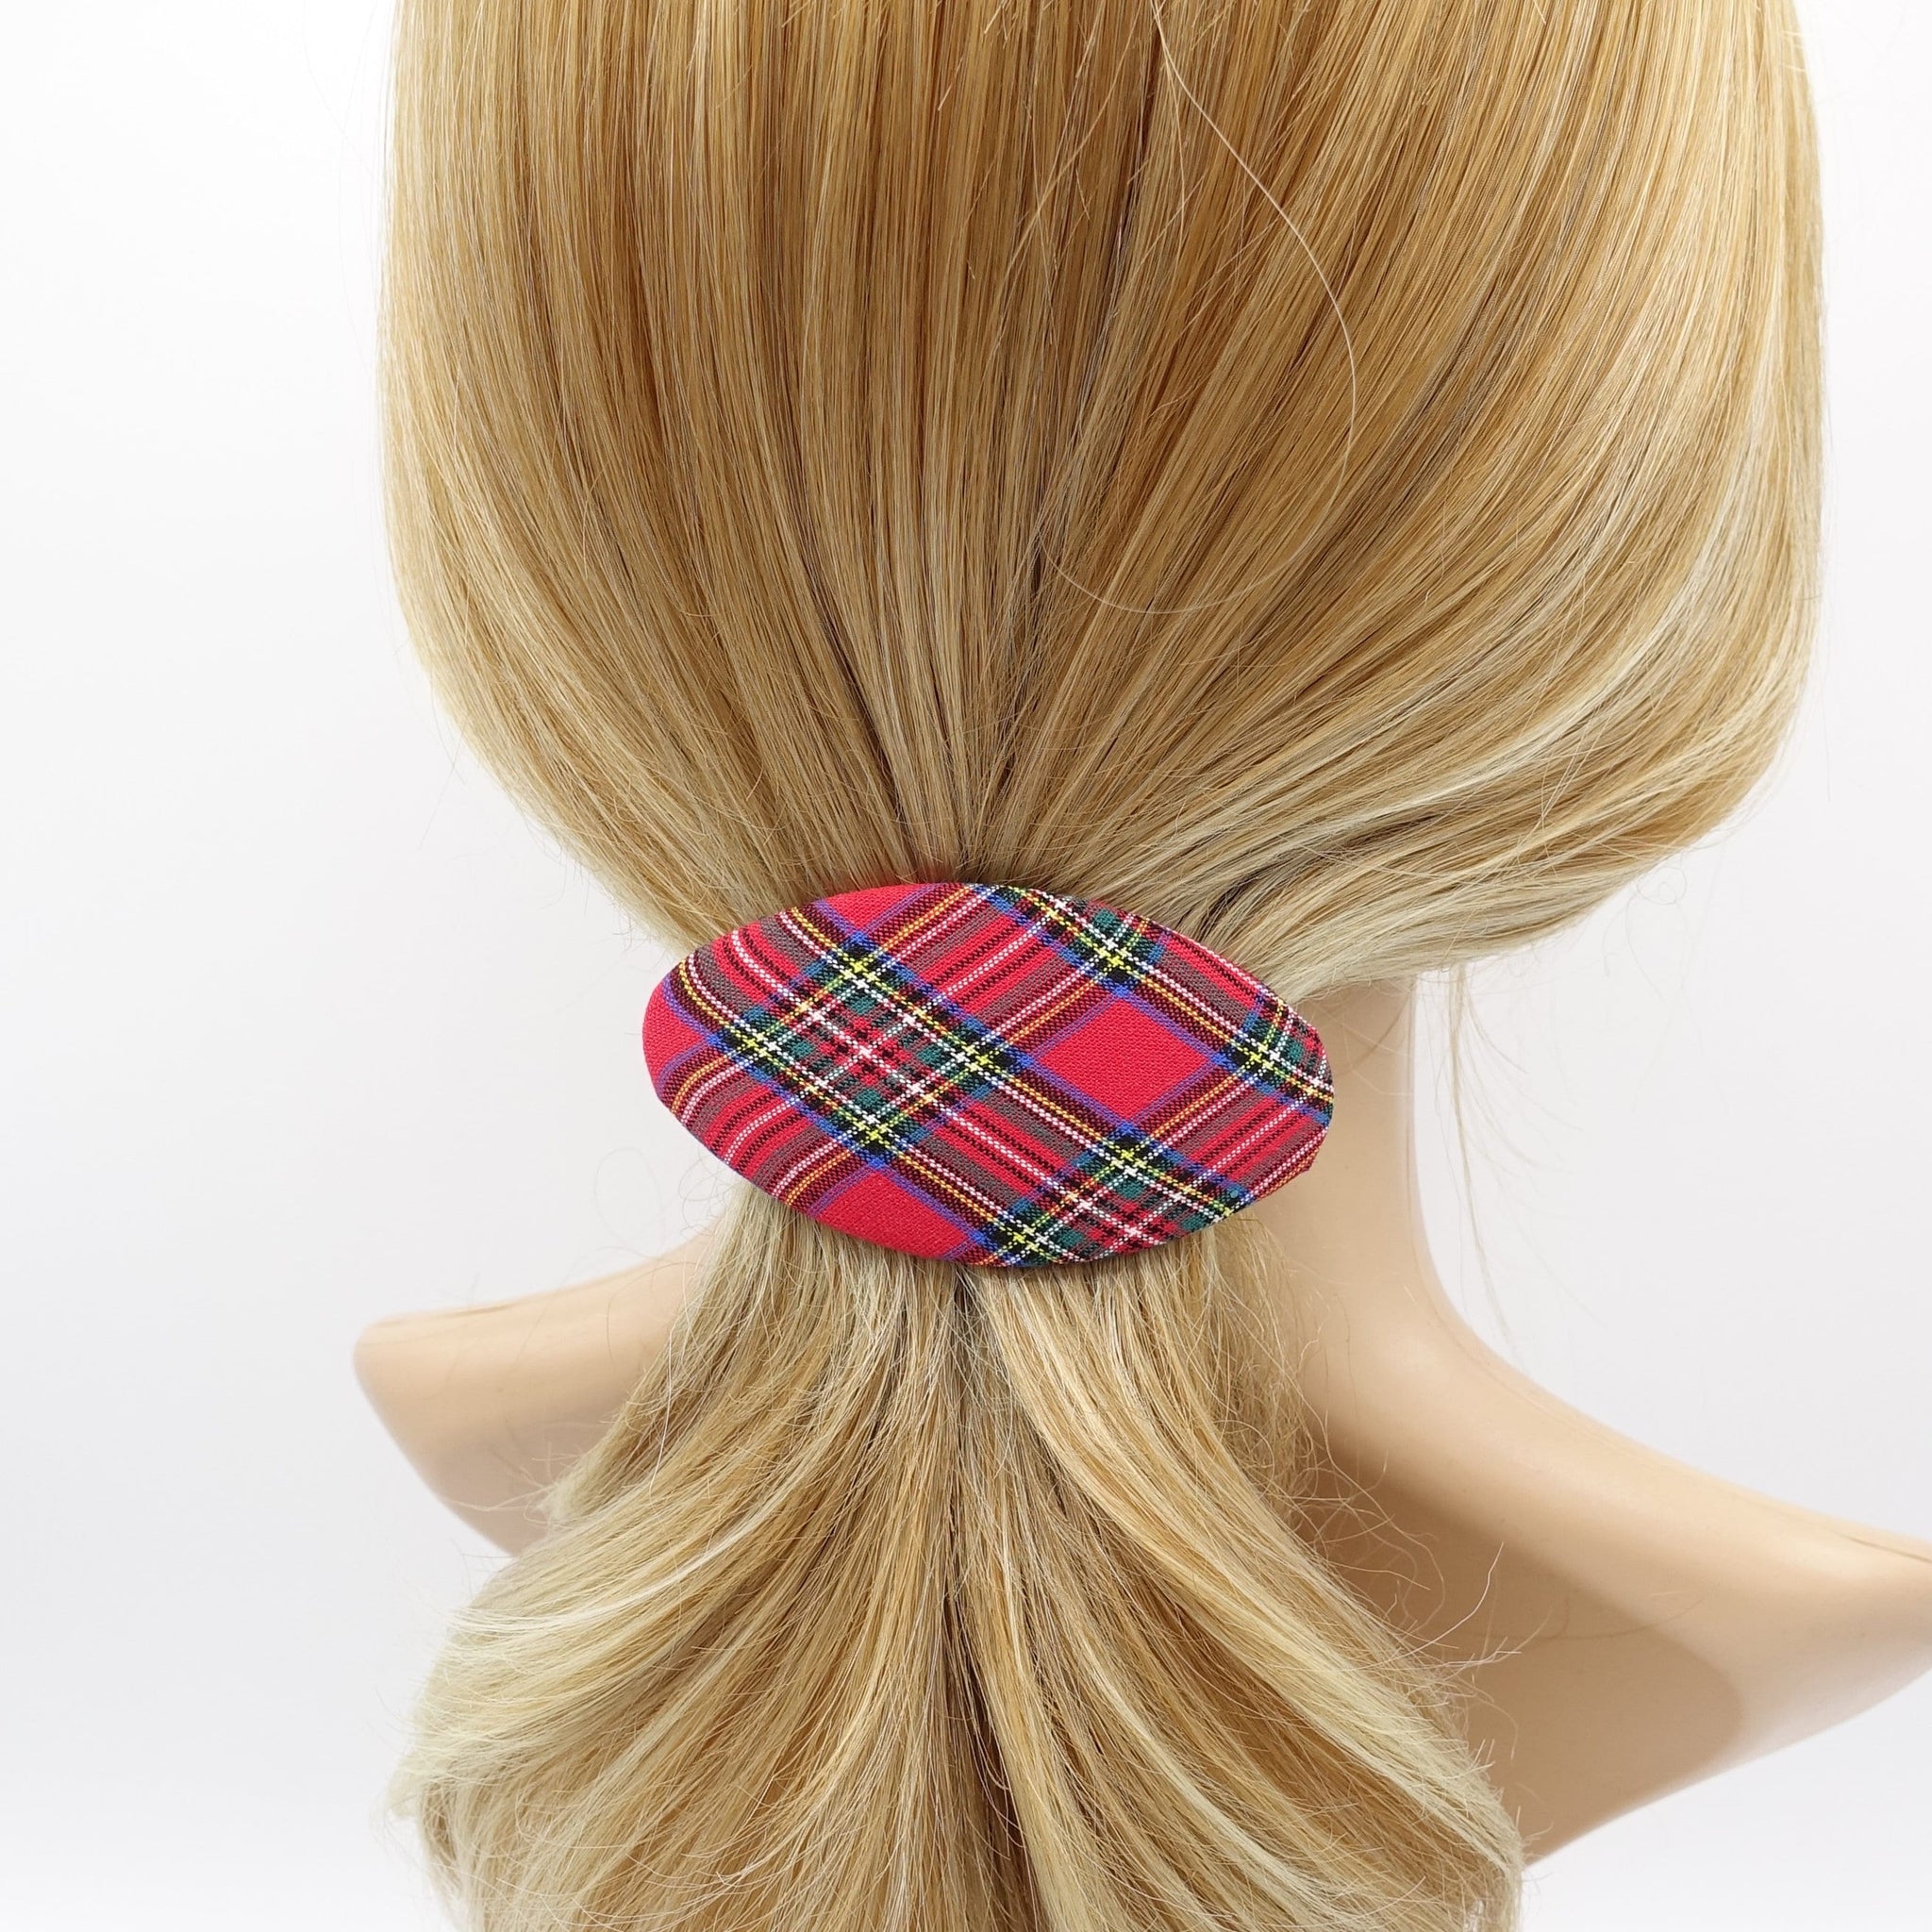 veryshine.com Barrette (Bow) Red plaid hair barrette, oval hair barrette, daily hair barrette for women